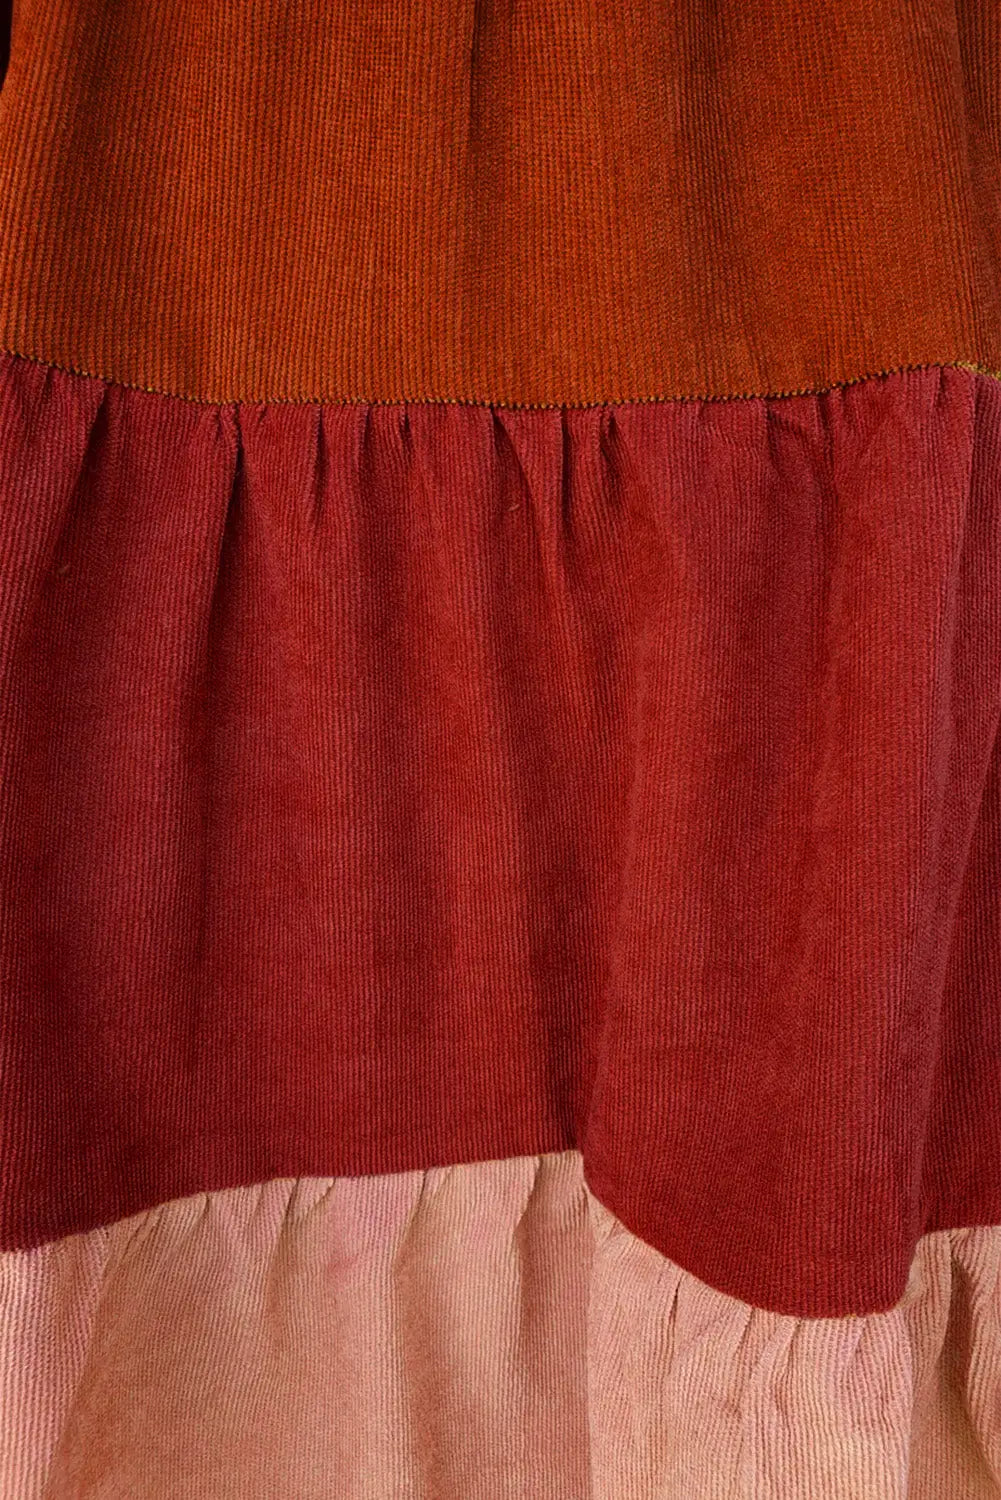 Corduroy striped square neck long sleeve dress - mini dresses